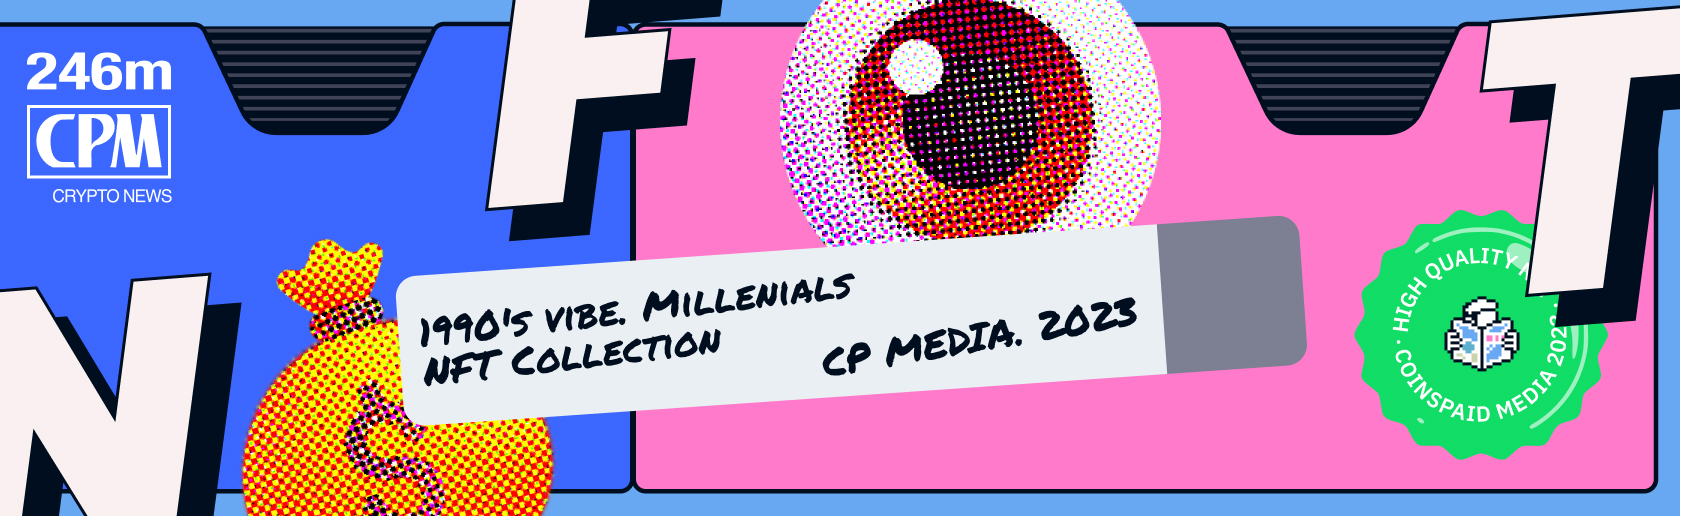 NFT-коллекция CP Media Millennials